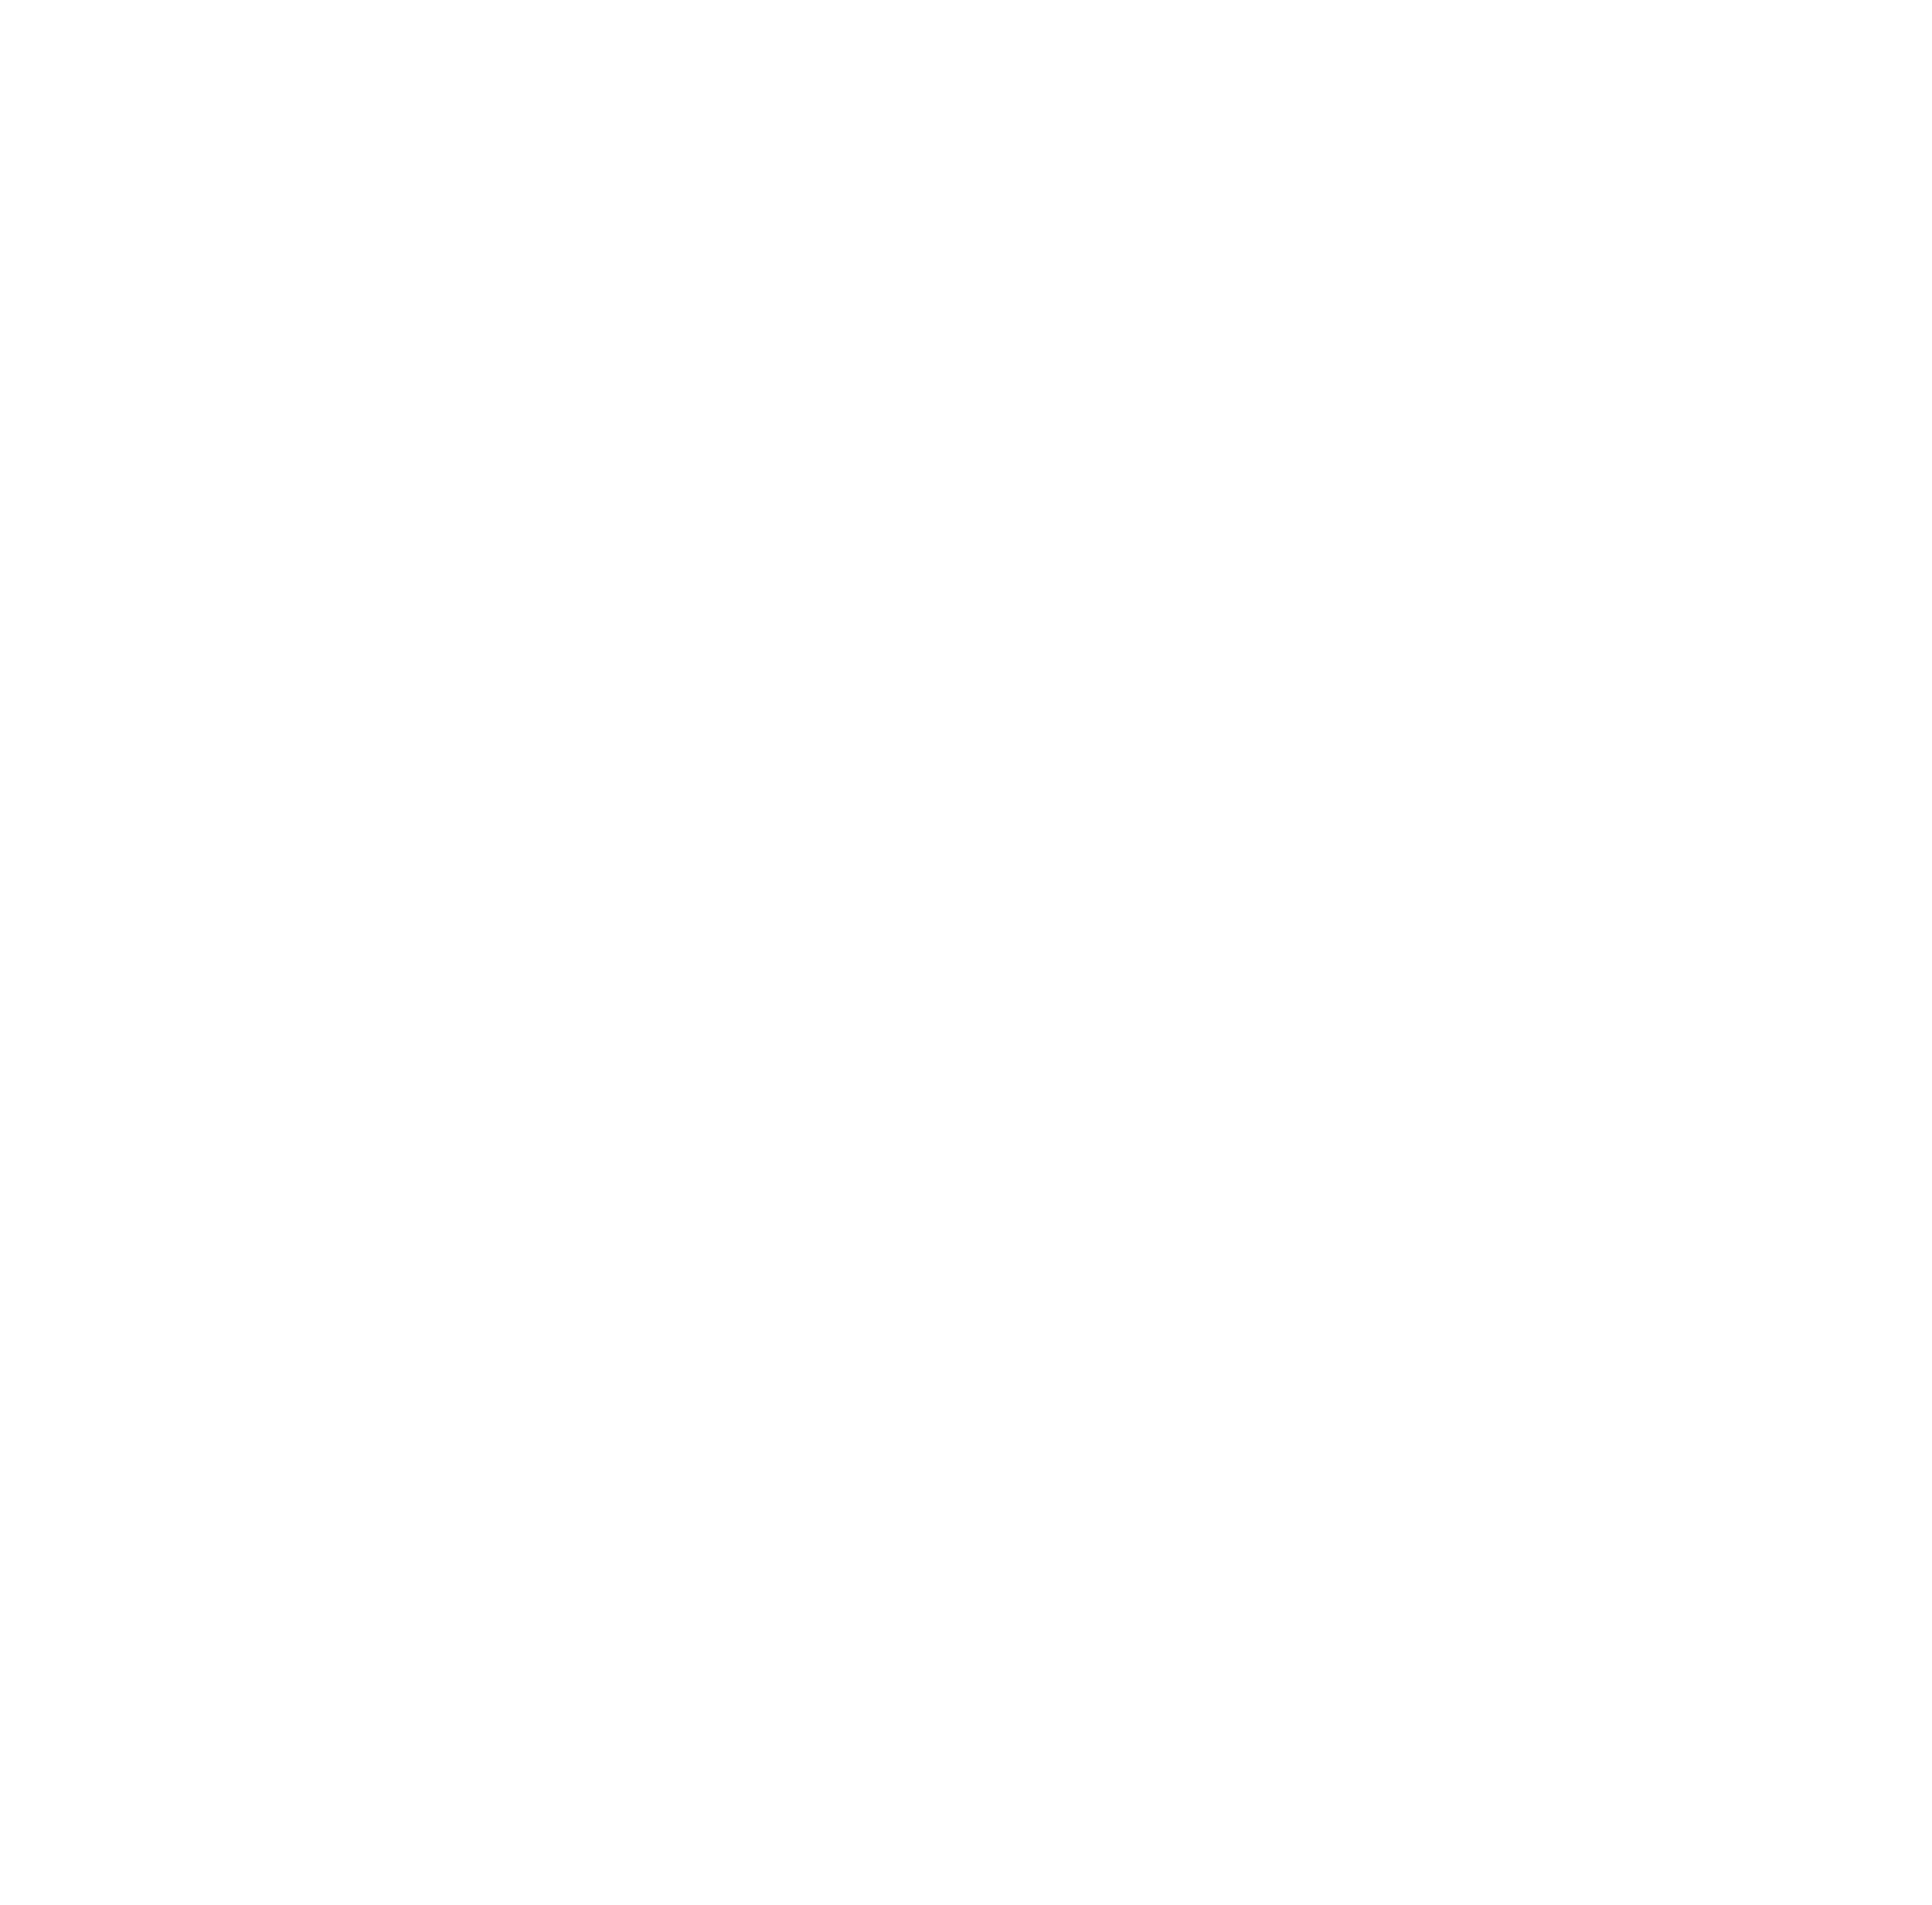 share_company_logo_rgb_white